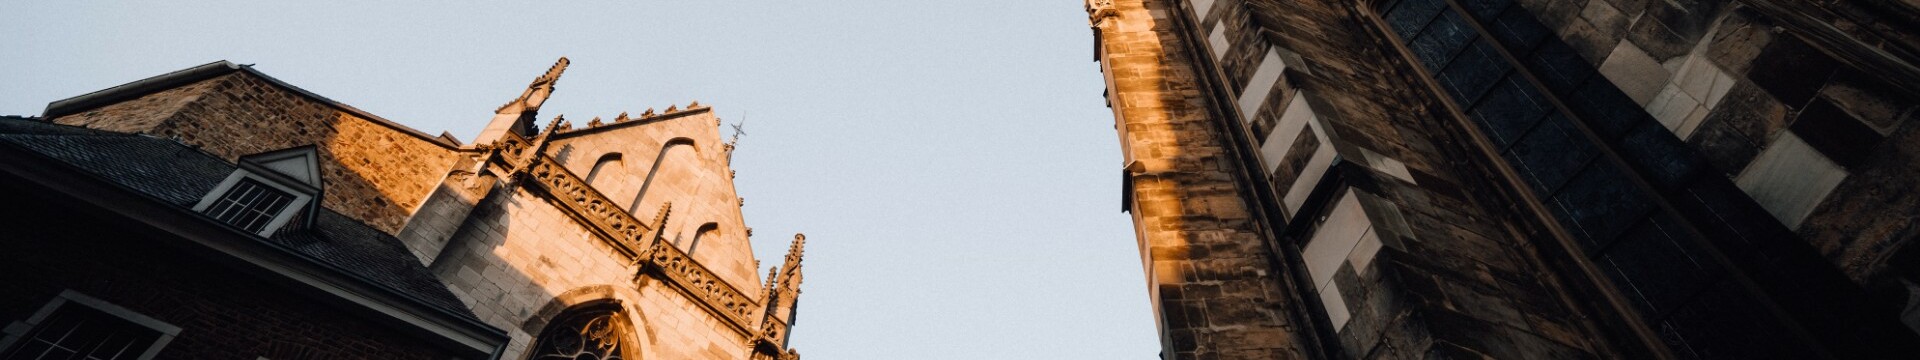 Der Aachener Dom ragt, von unten fotografiert, in den Himmel. © Leo Thomas